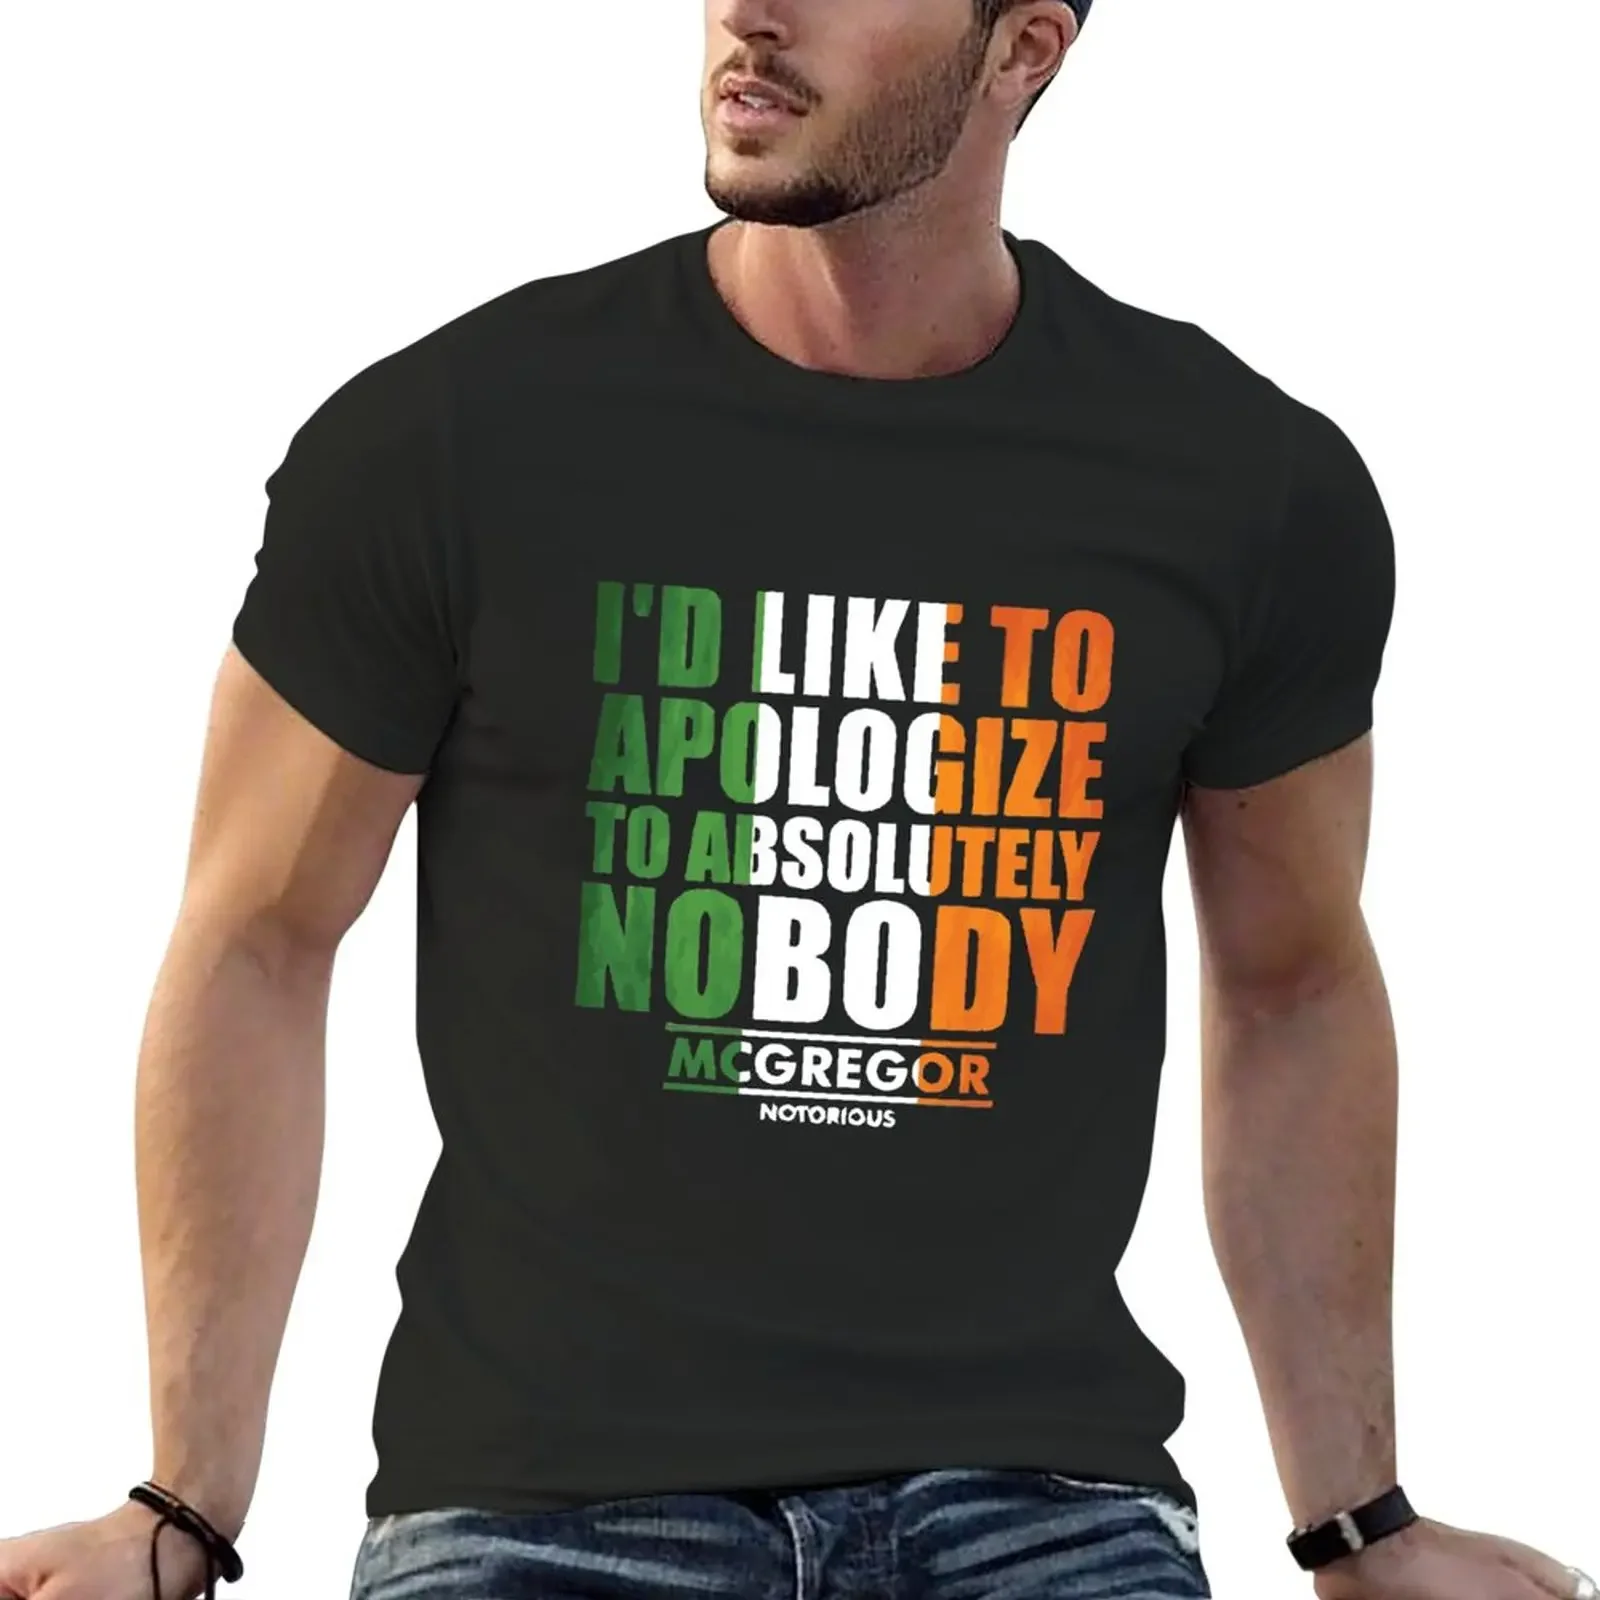 

Футболка Conor McGregot с надписью «Никто», потрясающие заготовки, милая одежда, мужские футболки с графическим рисунком